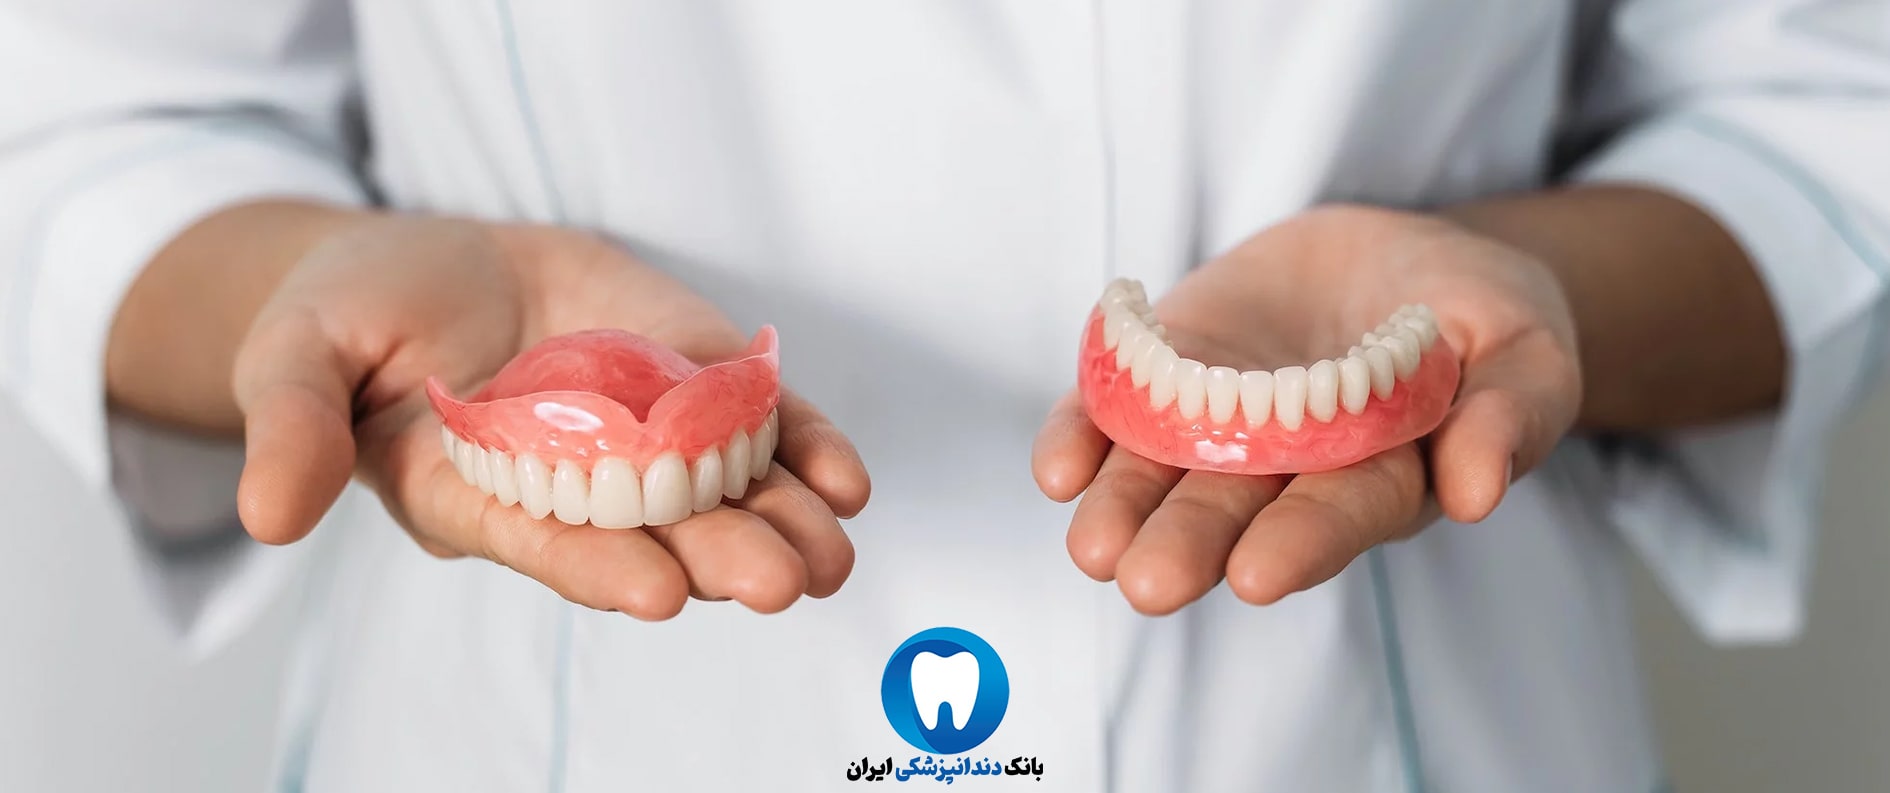 پروتزهای دندانی در بهترین کلینیک تخصصی دندانپزشکی زیبایی در گرگان